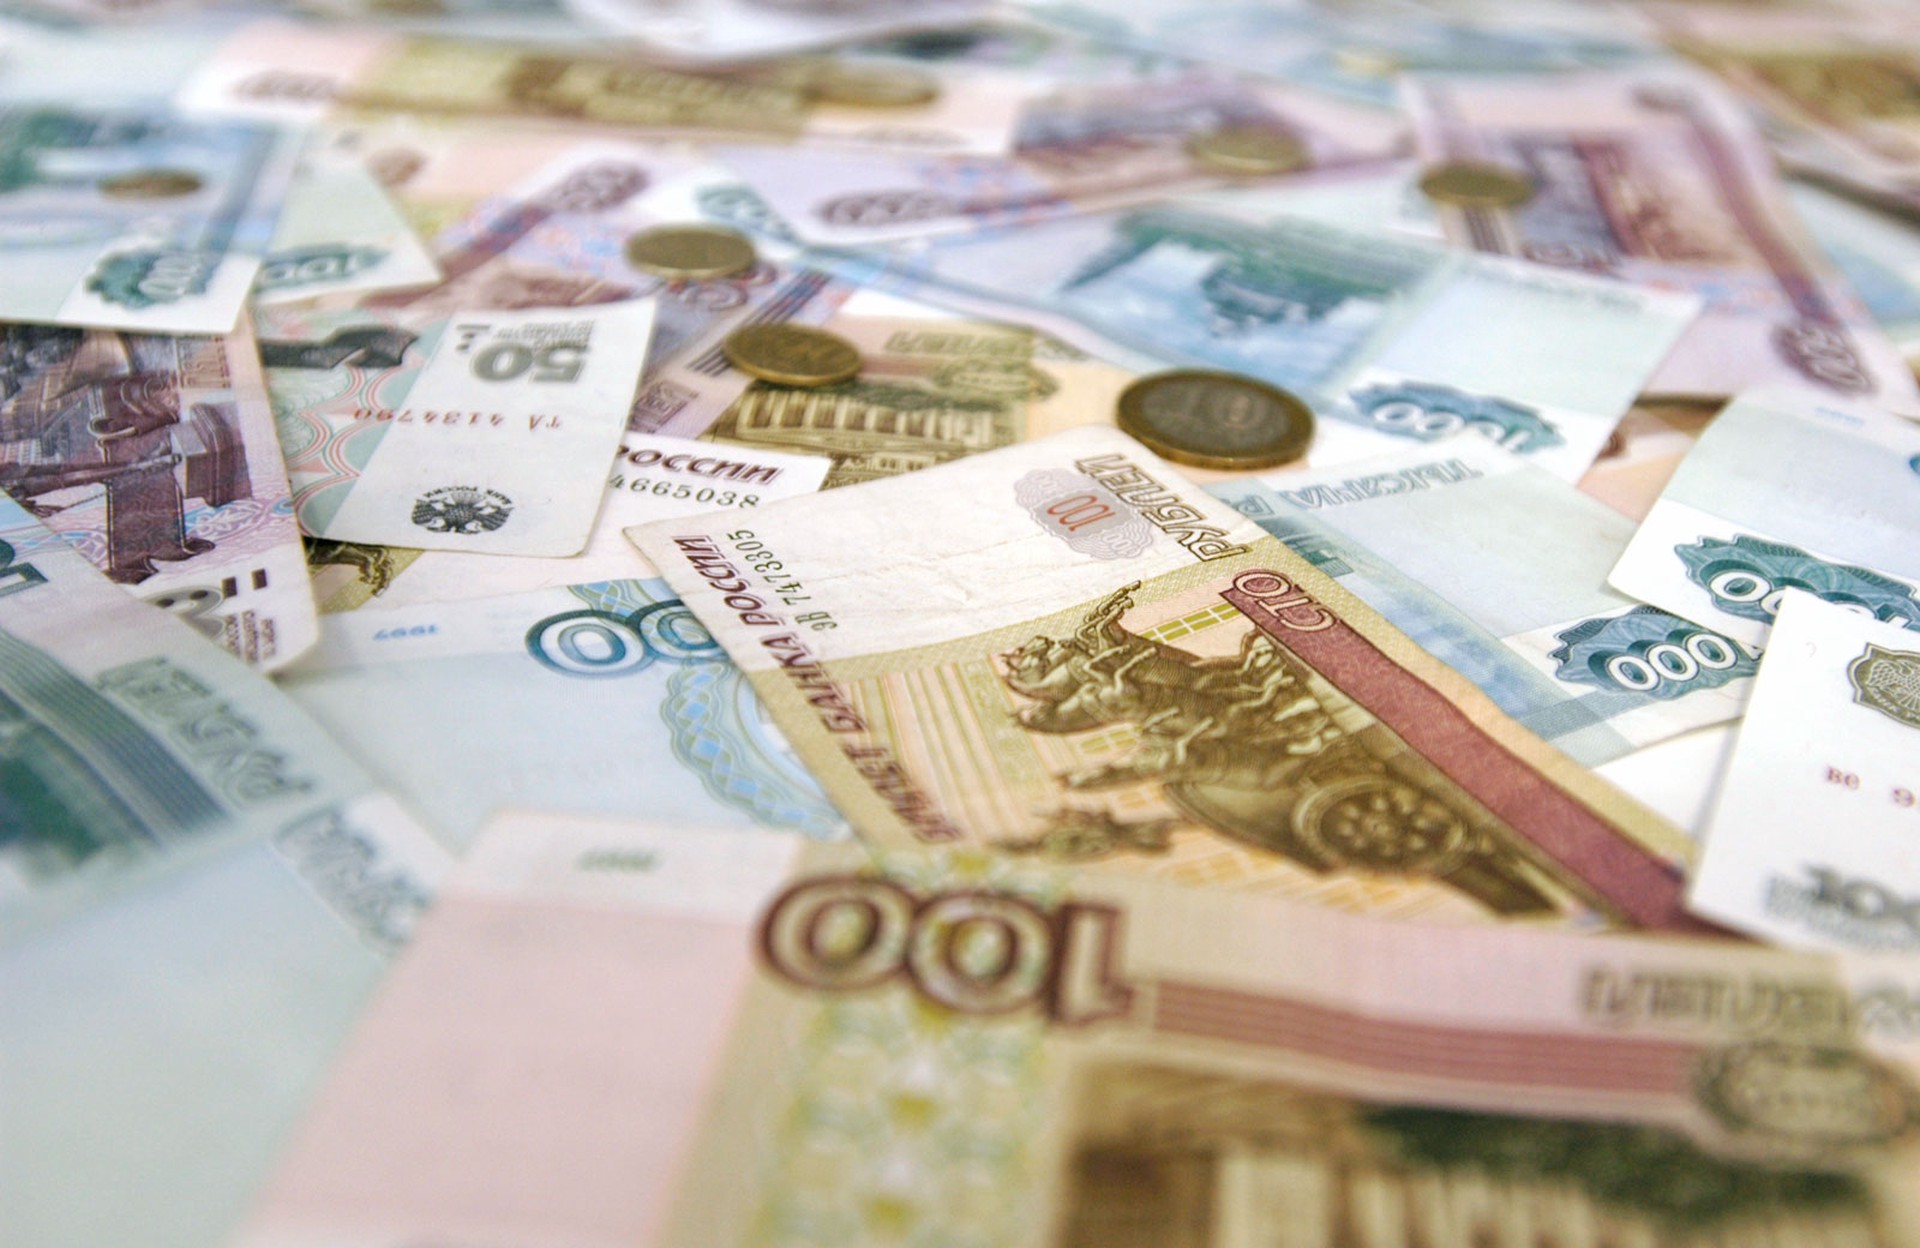 Минэнерго РФ: Зависшие на счетах рупии не могли спровоцировать падение рубля